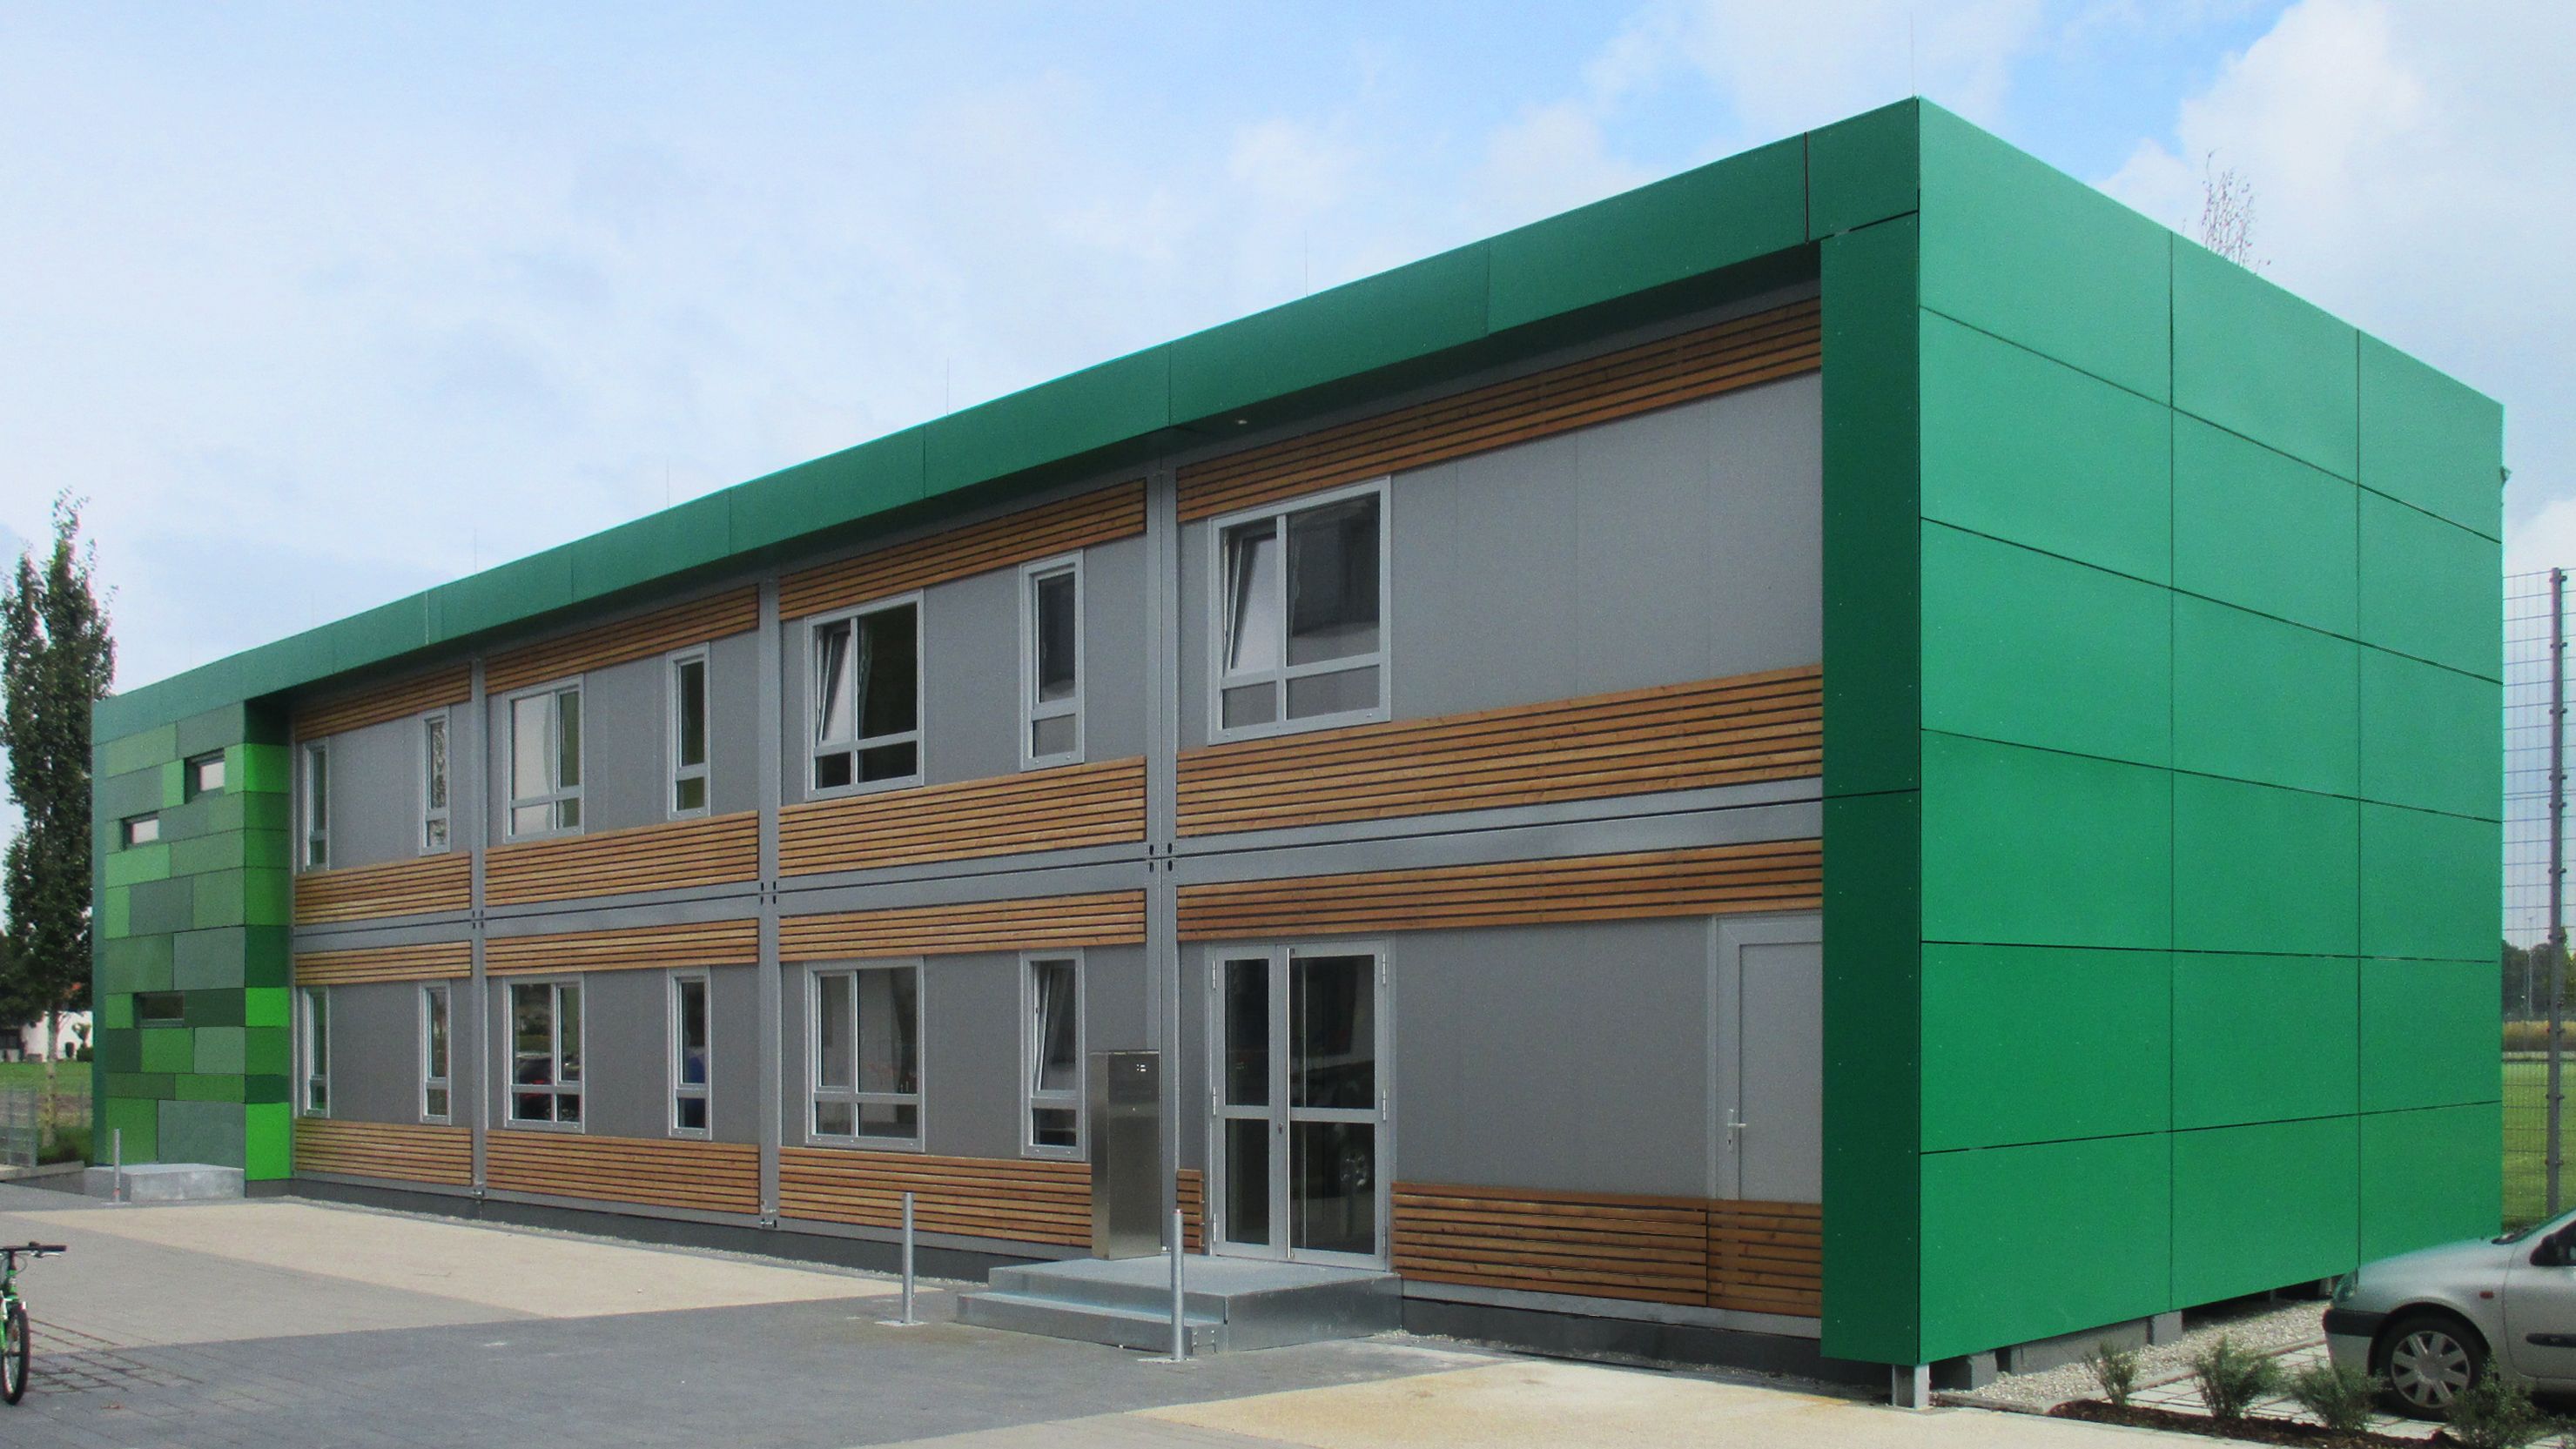 2-stöckiges Gebäude mit grünen Seitenwänden